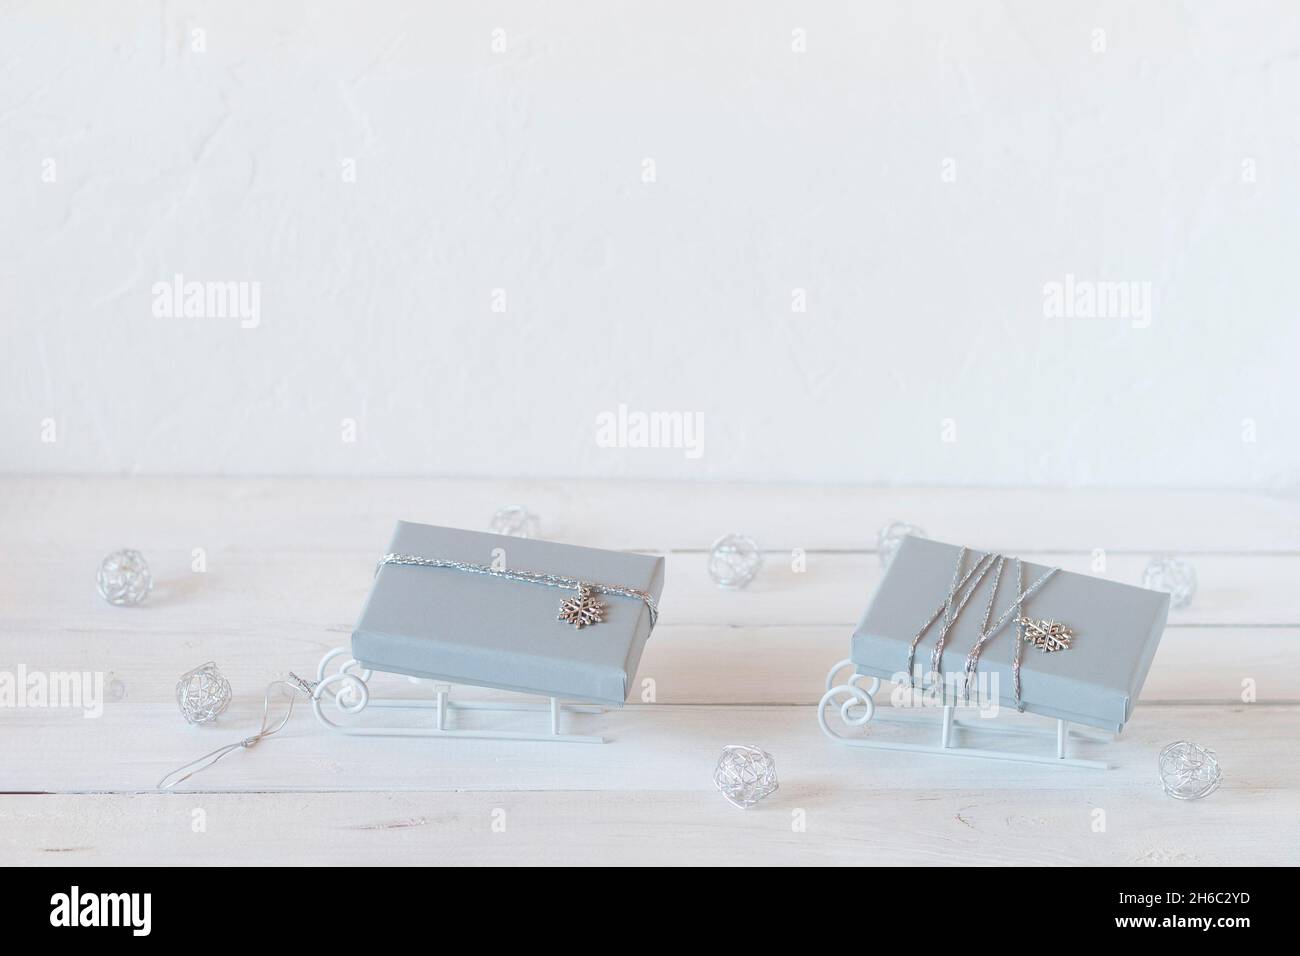 Pequeños trineos decorativos con cajas de regalo de Navidad grises, colores blanco, gris y plata, espacio de copia, idea para tarjeta de Navidad Foto de stock